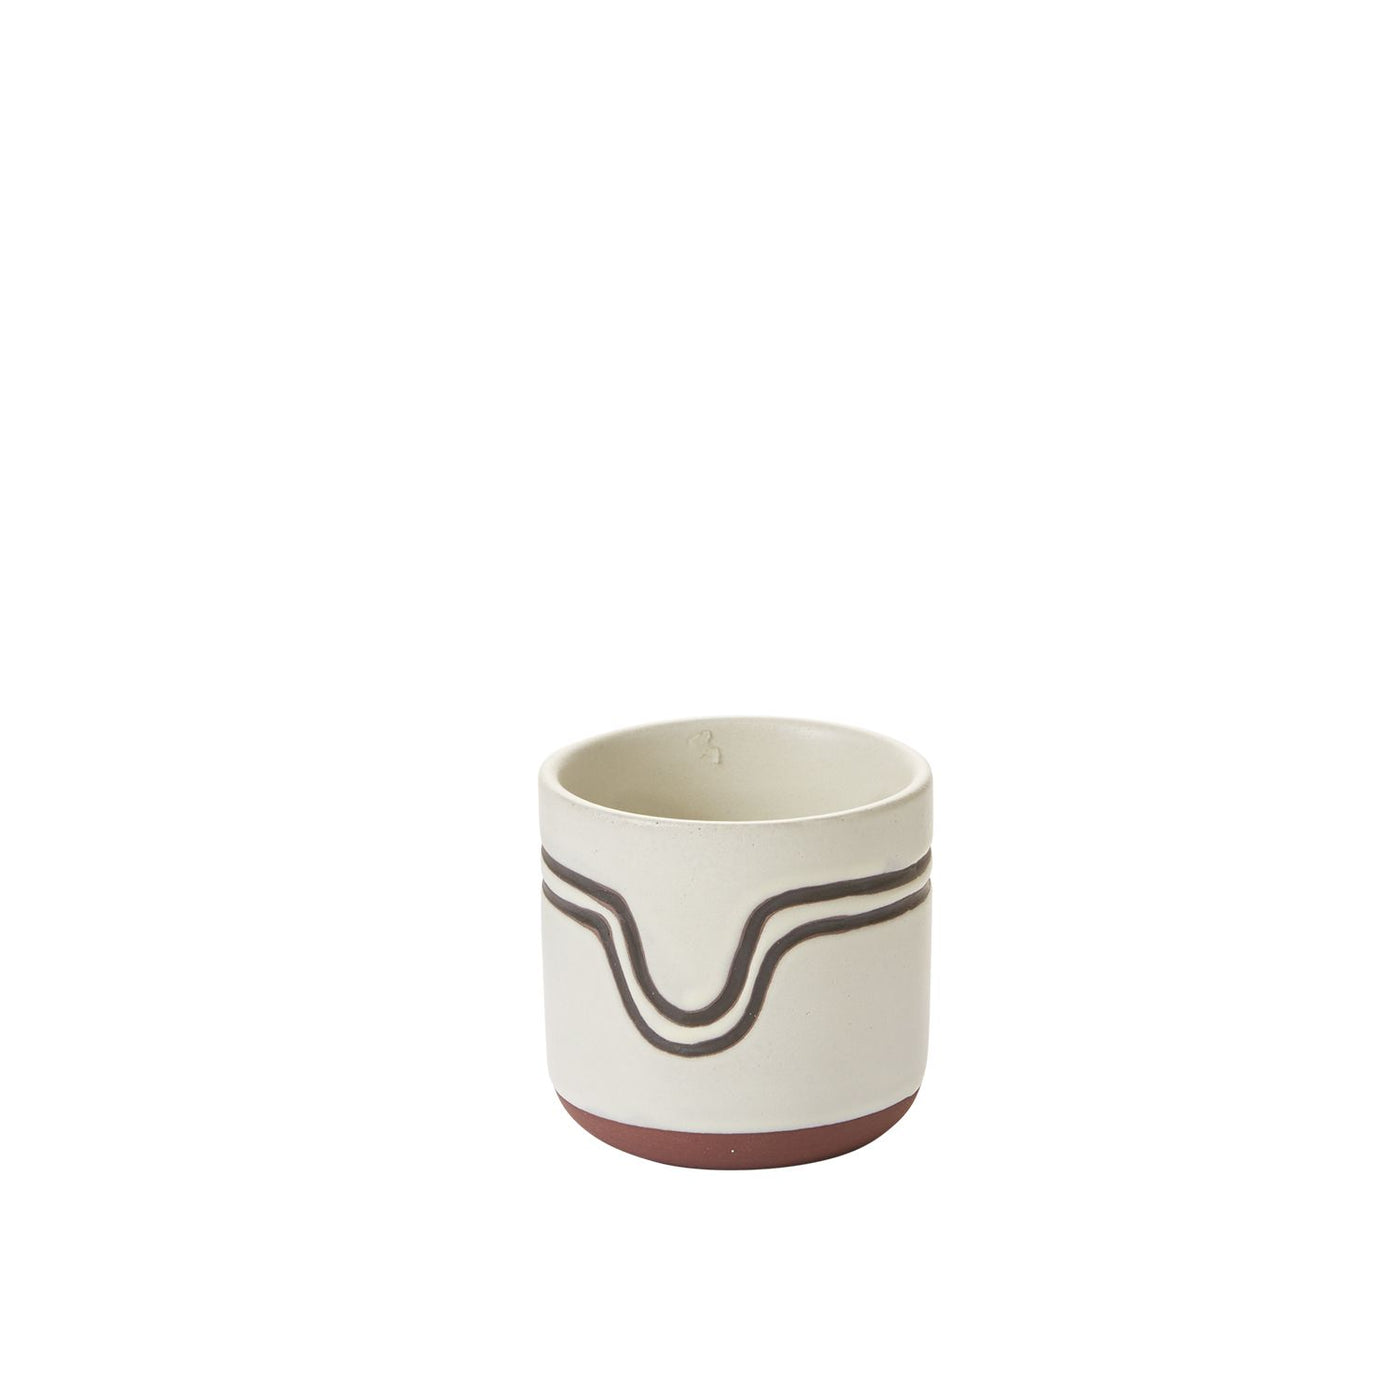 Off-White Lanquin Pot, 3"